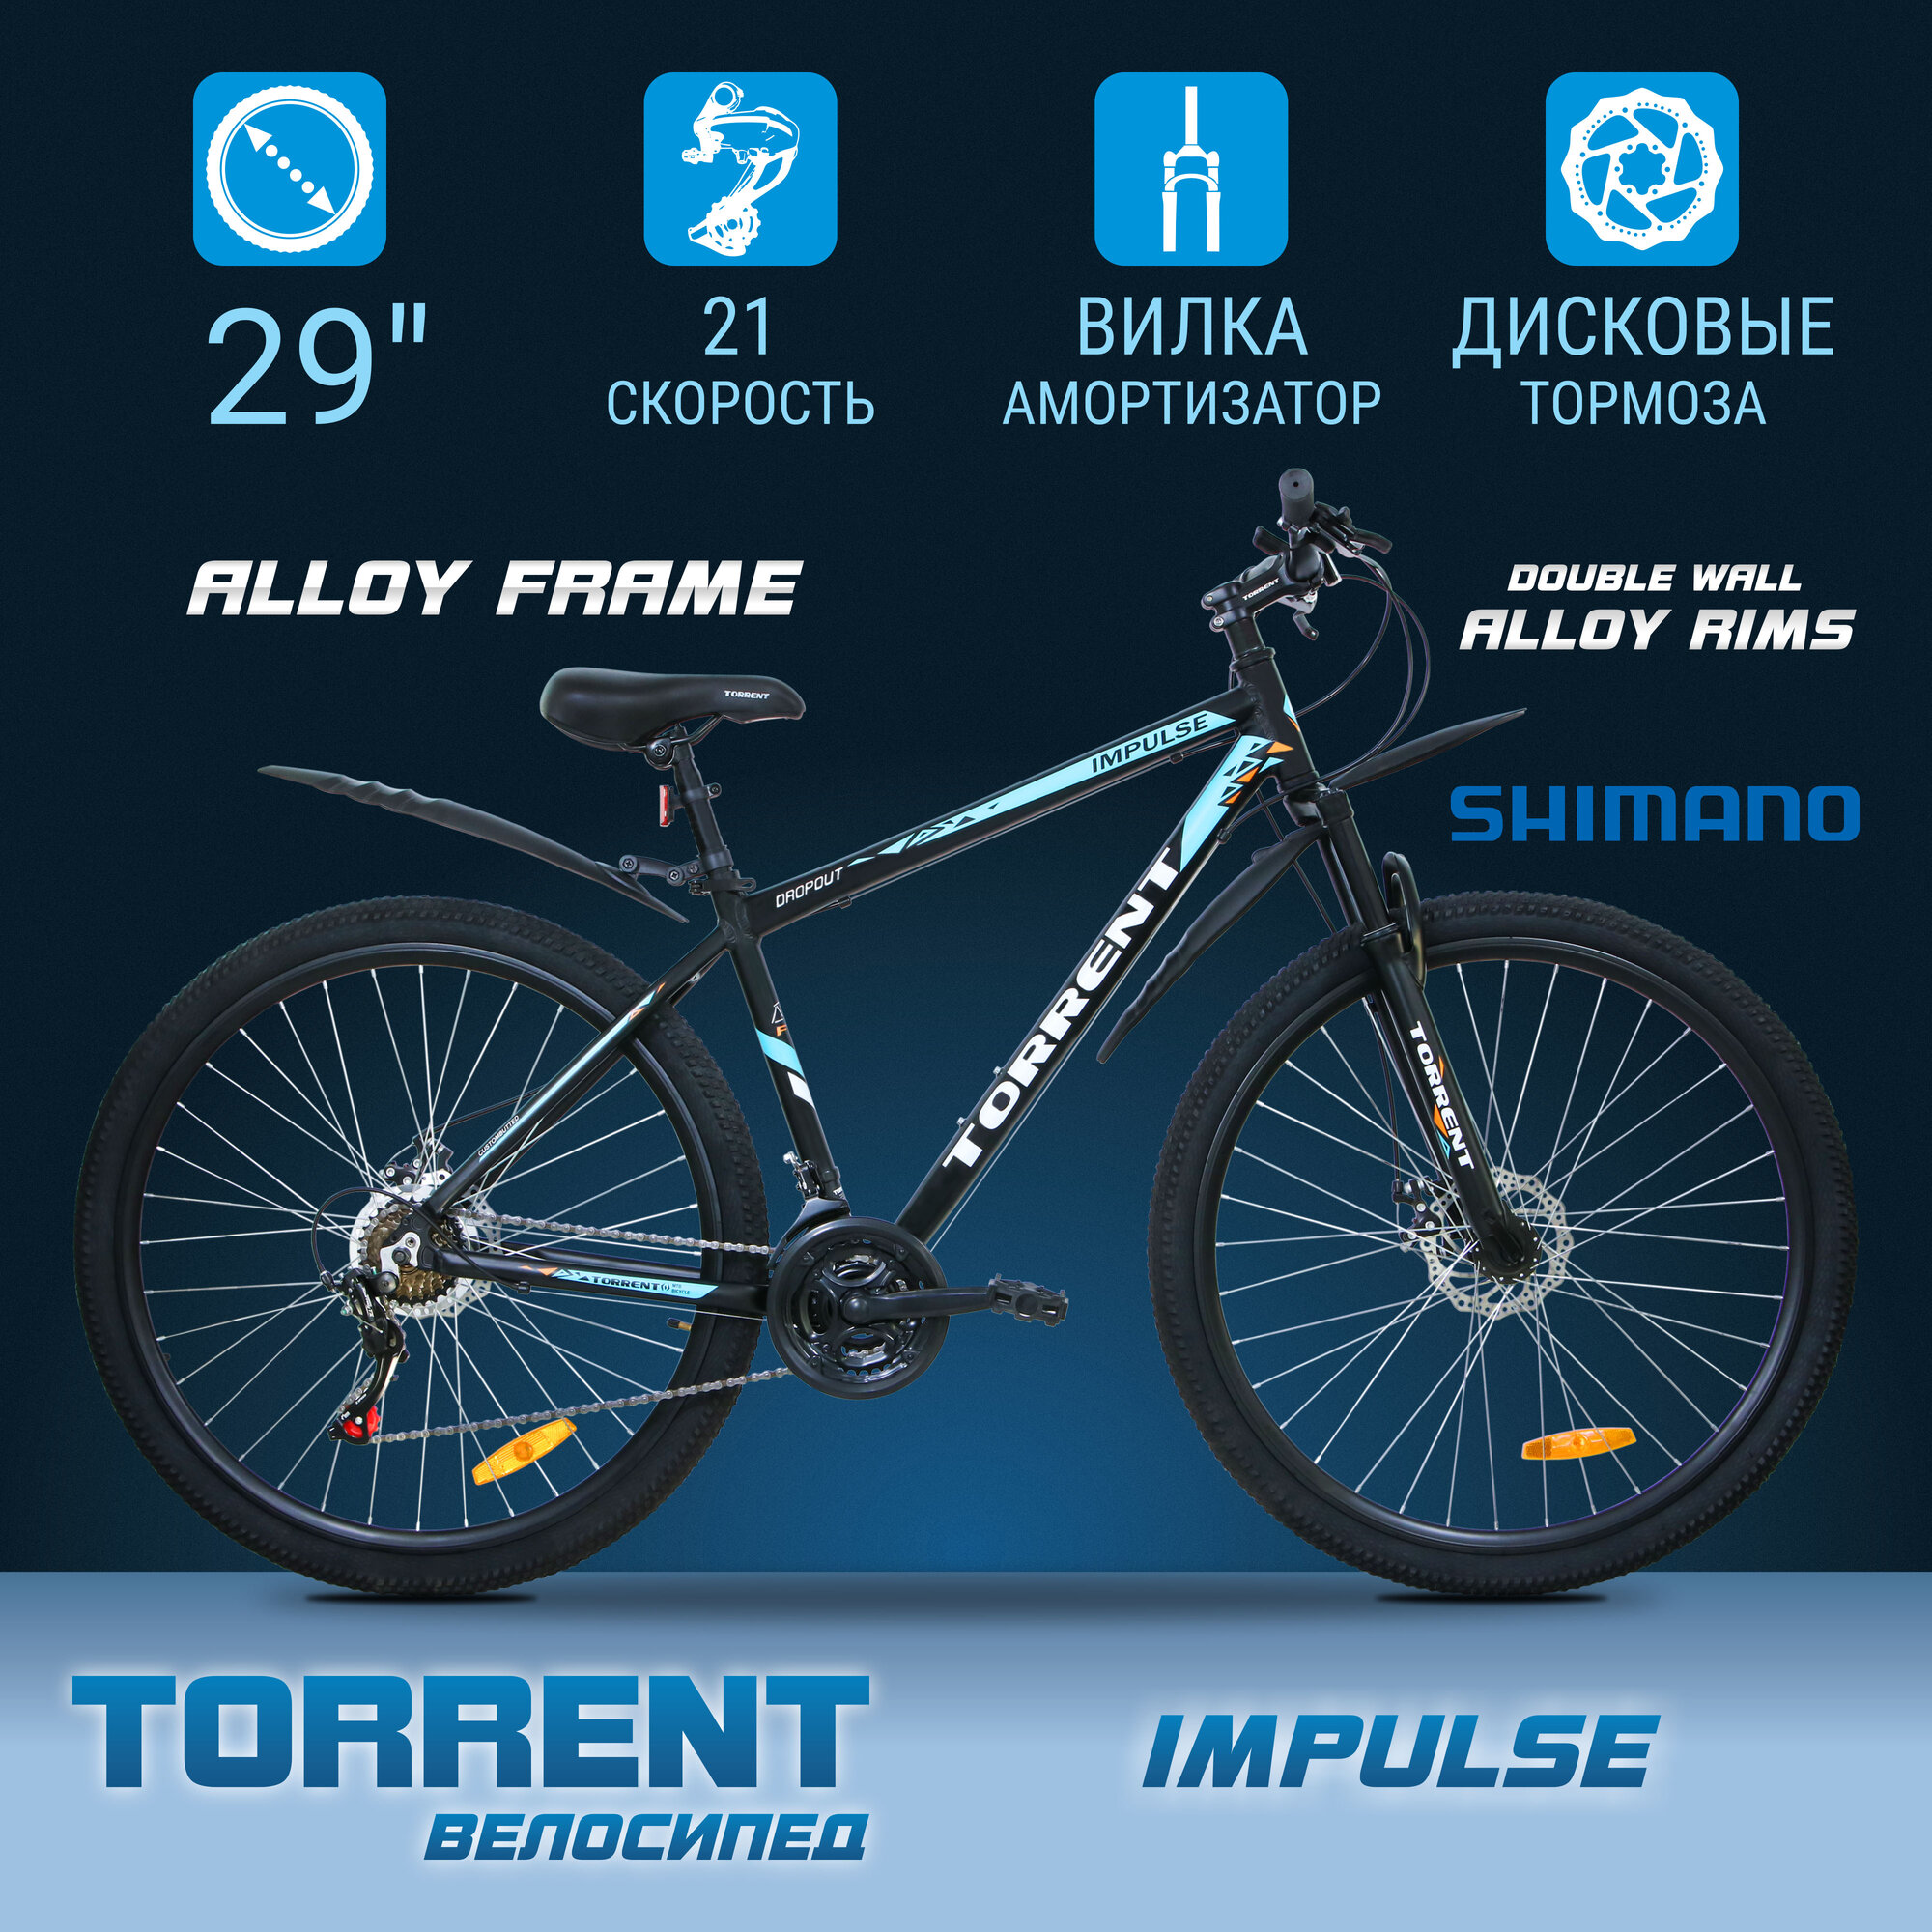 Велосипед TORRENT Impulse (рама алюминий 18", внедорожный, 21 скорость, SHIMANO, колеса 29д)